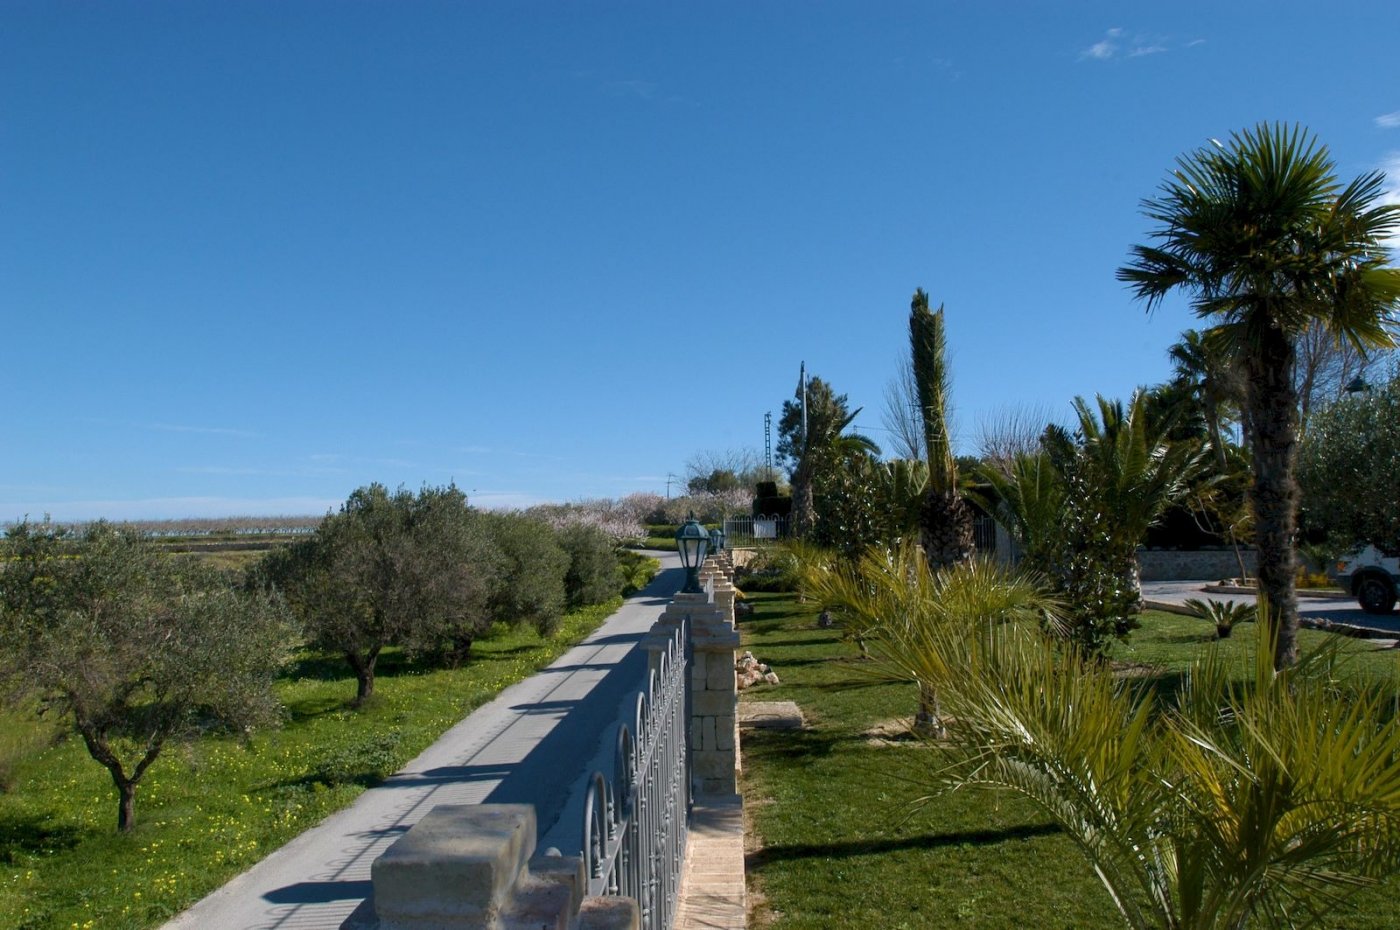 Prachtige unieke villa in mediterrane stijl in Moraira met uitzicht op zee